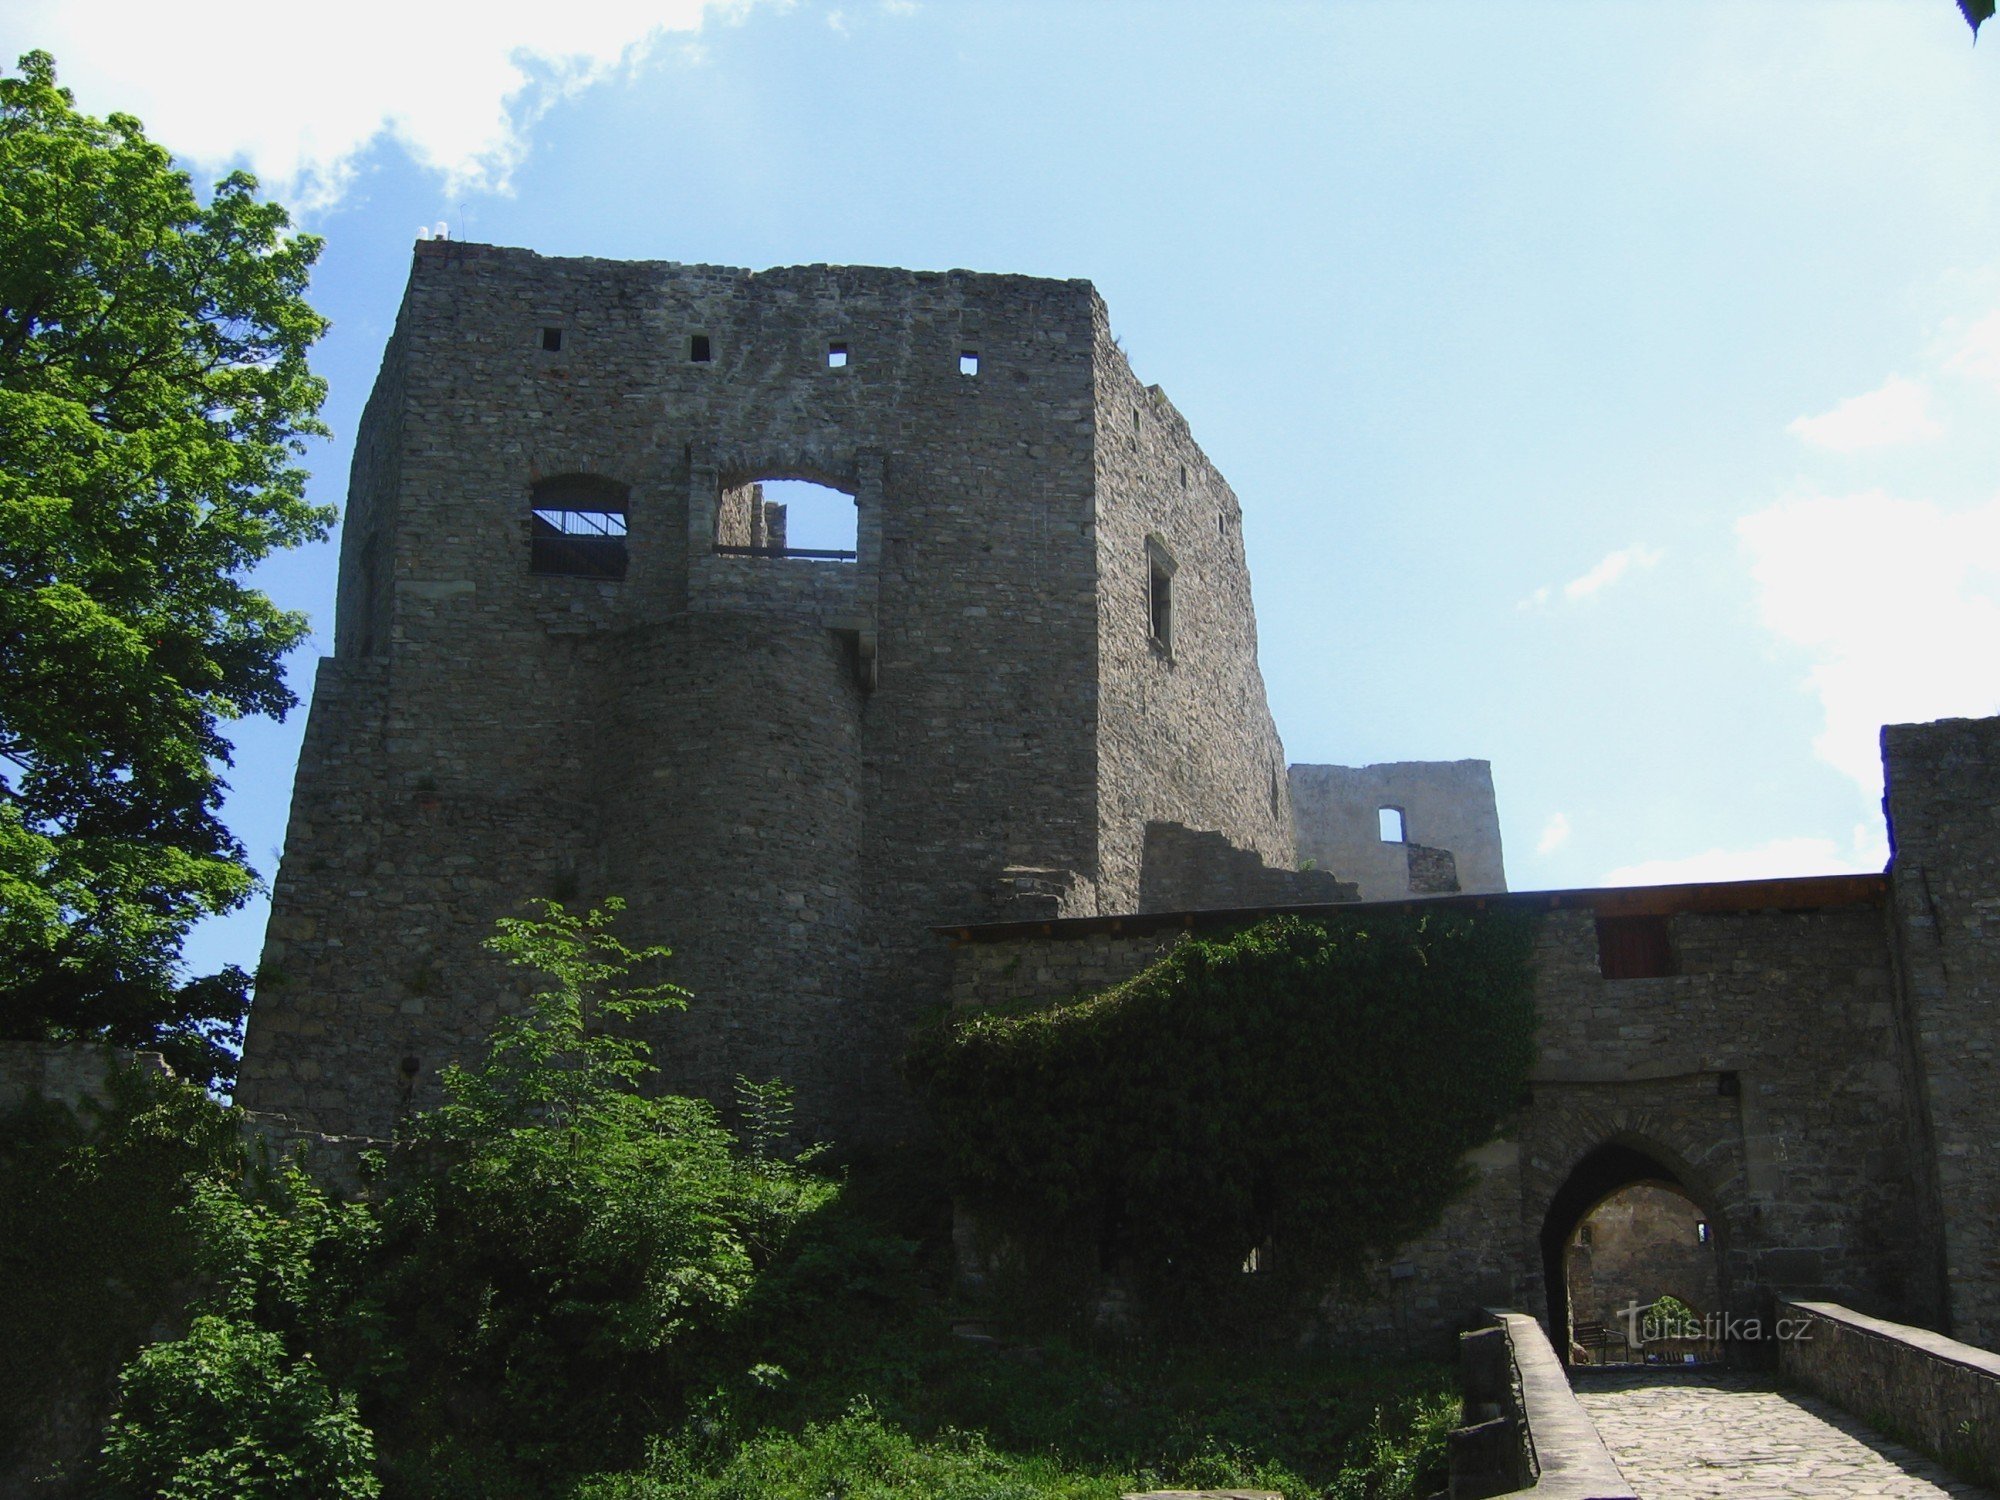 Castle Hukvaldy